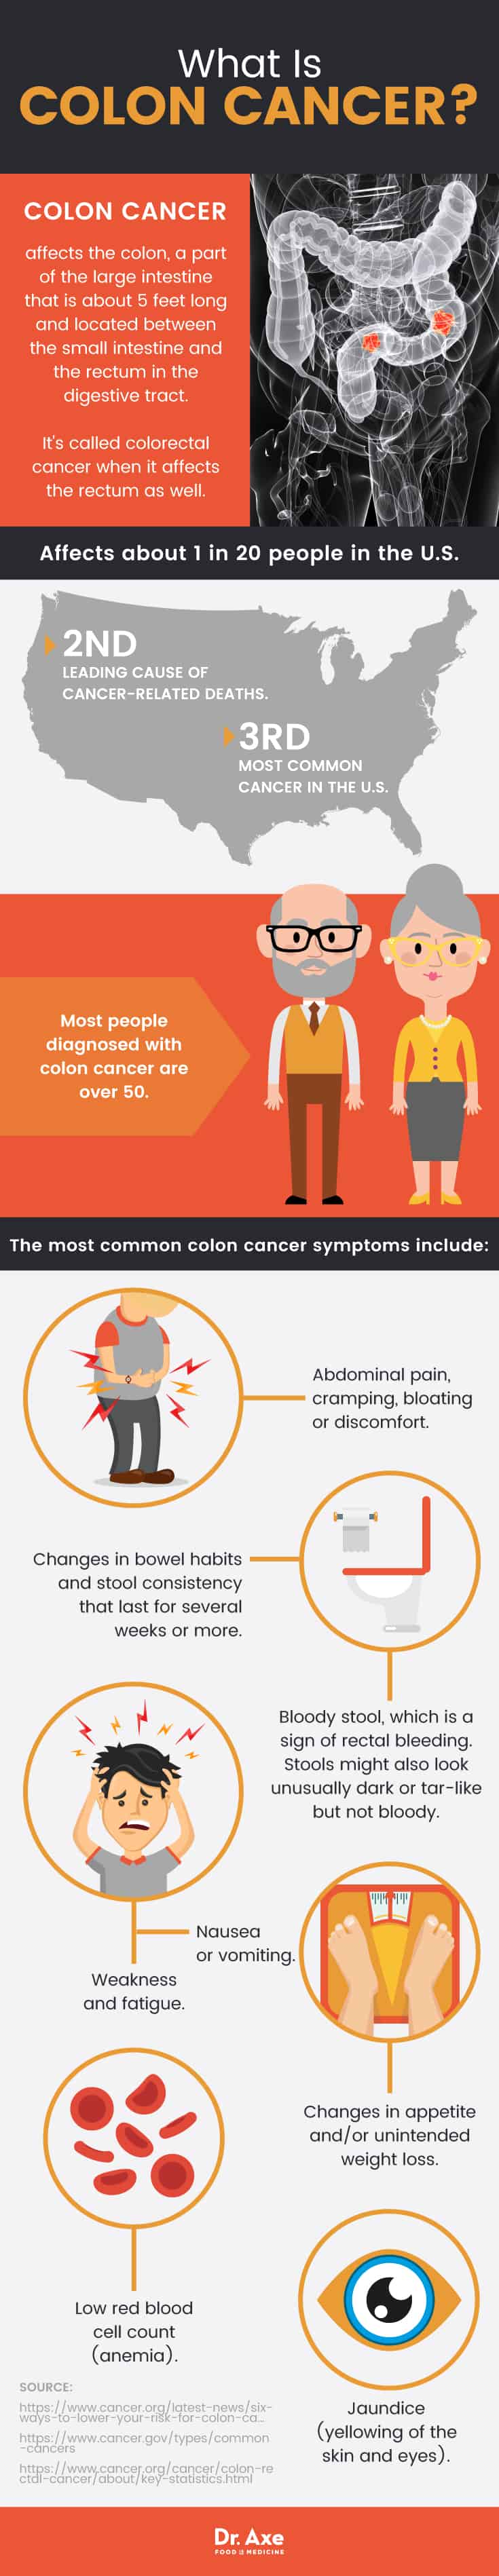 Colon cancer symptoms: what is colon cancer?